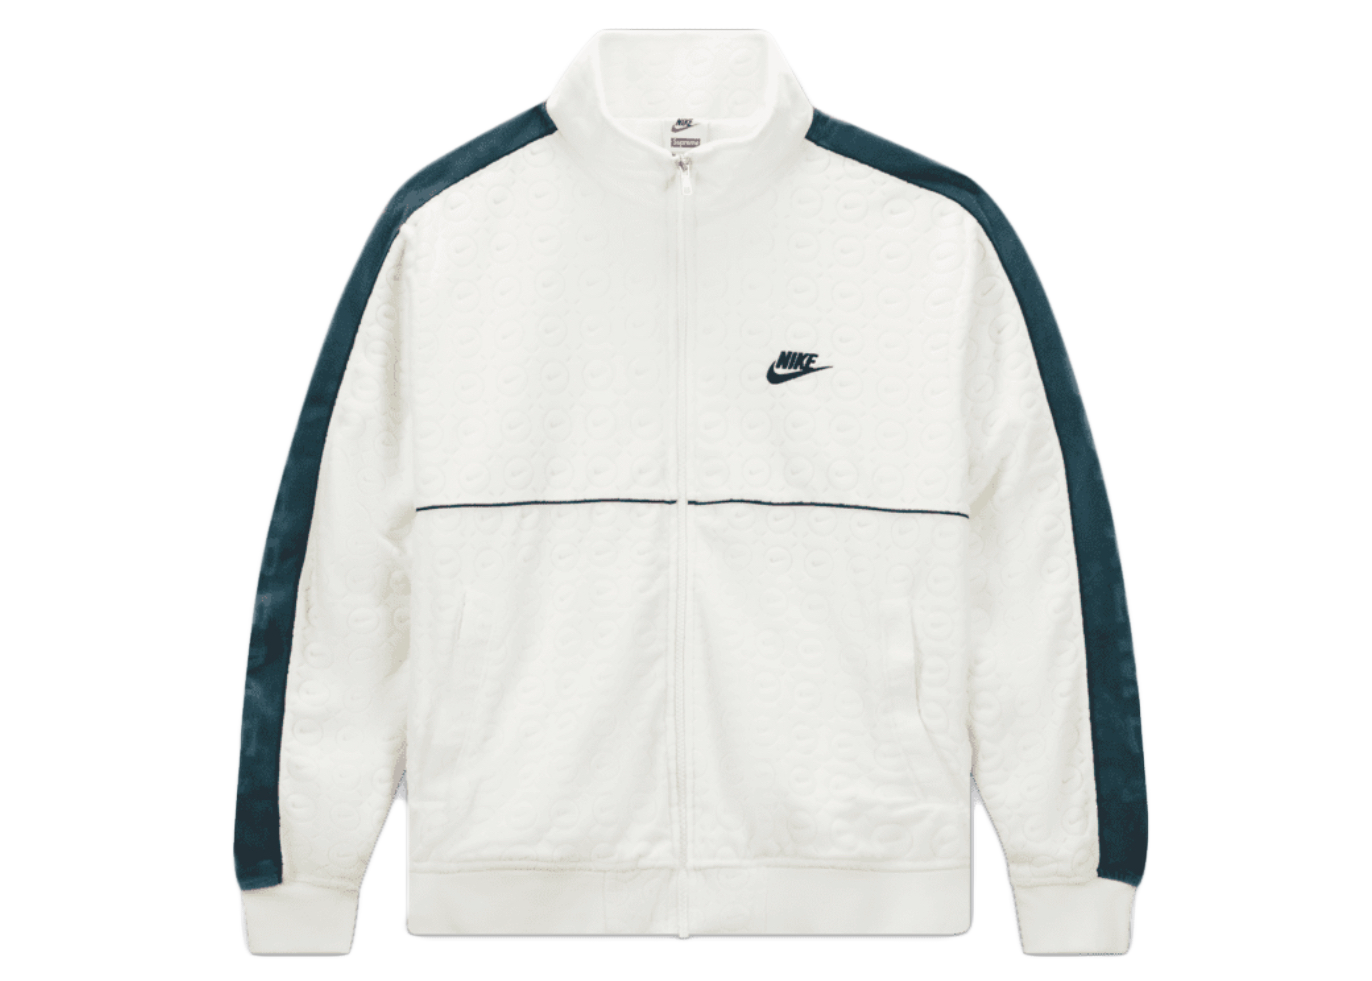 14950円 配送員設置 Supreme Nike anorak jacket